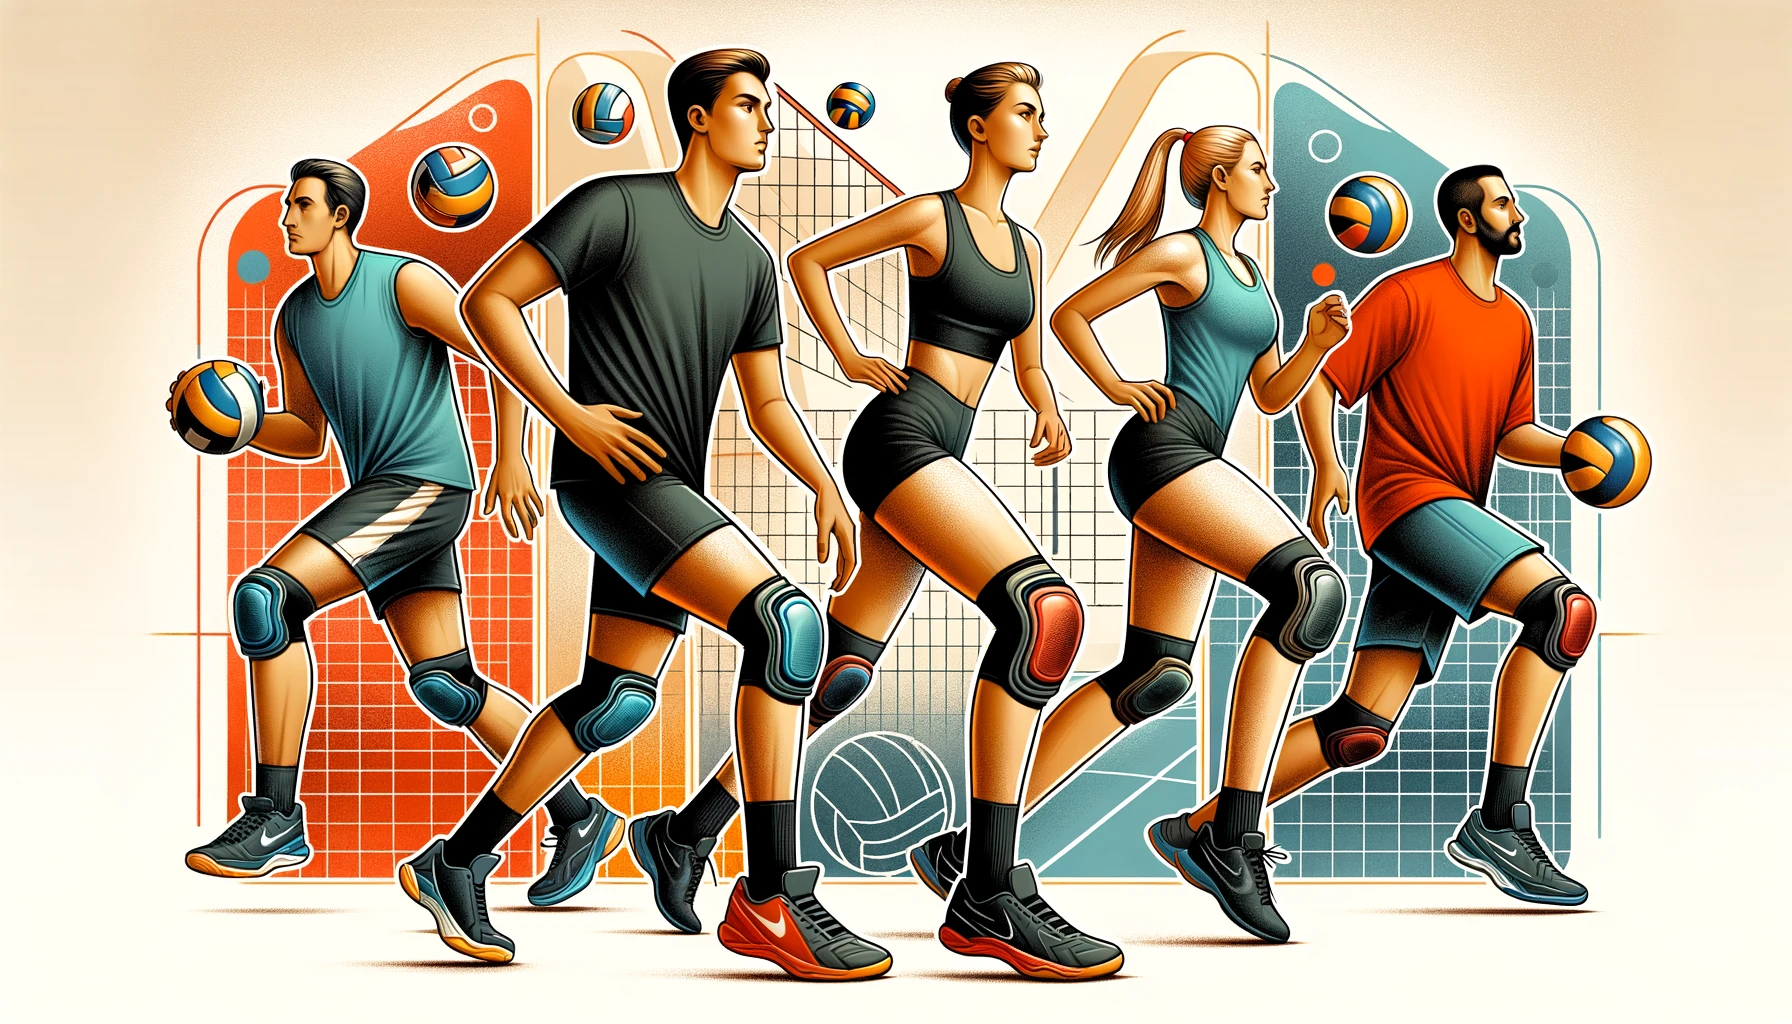 Illustration von verschiedenen männlichen und weiblichen Volleyballspielern in Action-Posen, wobei die Knieschoner, die sie tragen, hervorgehoben werden.